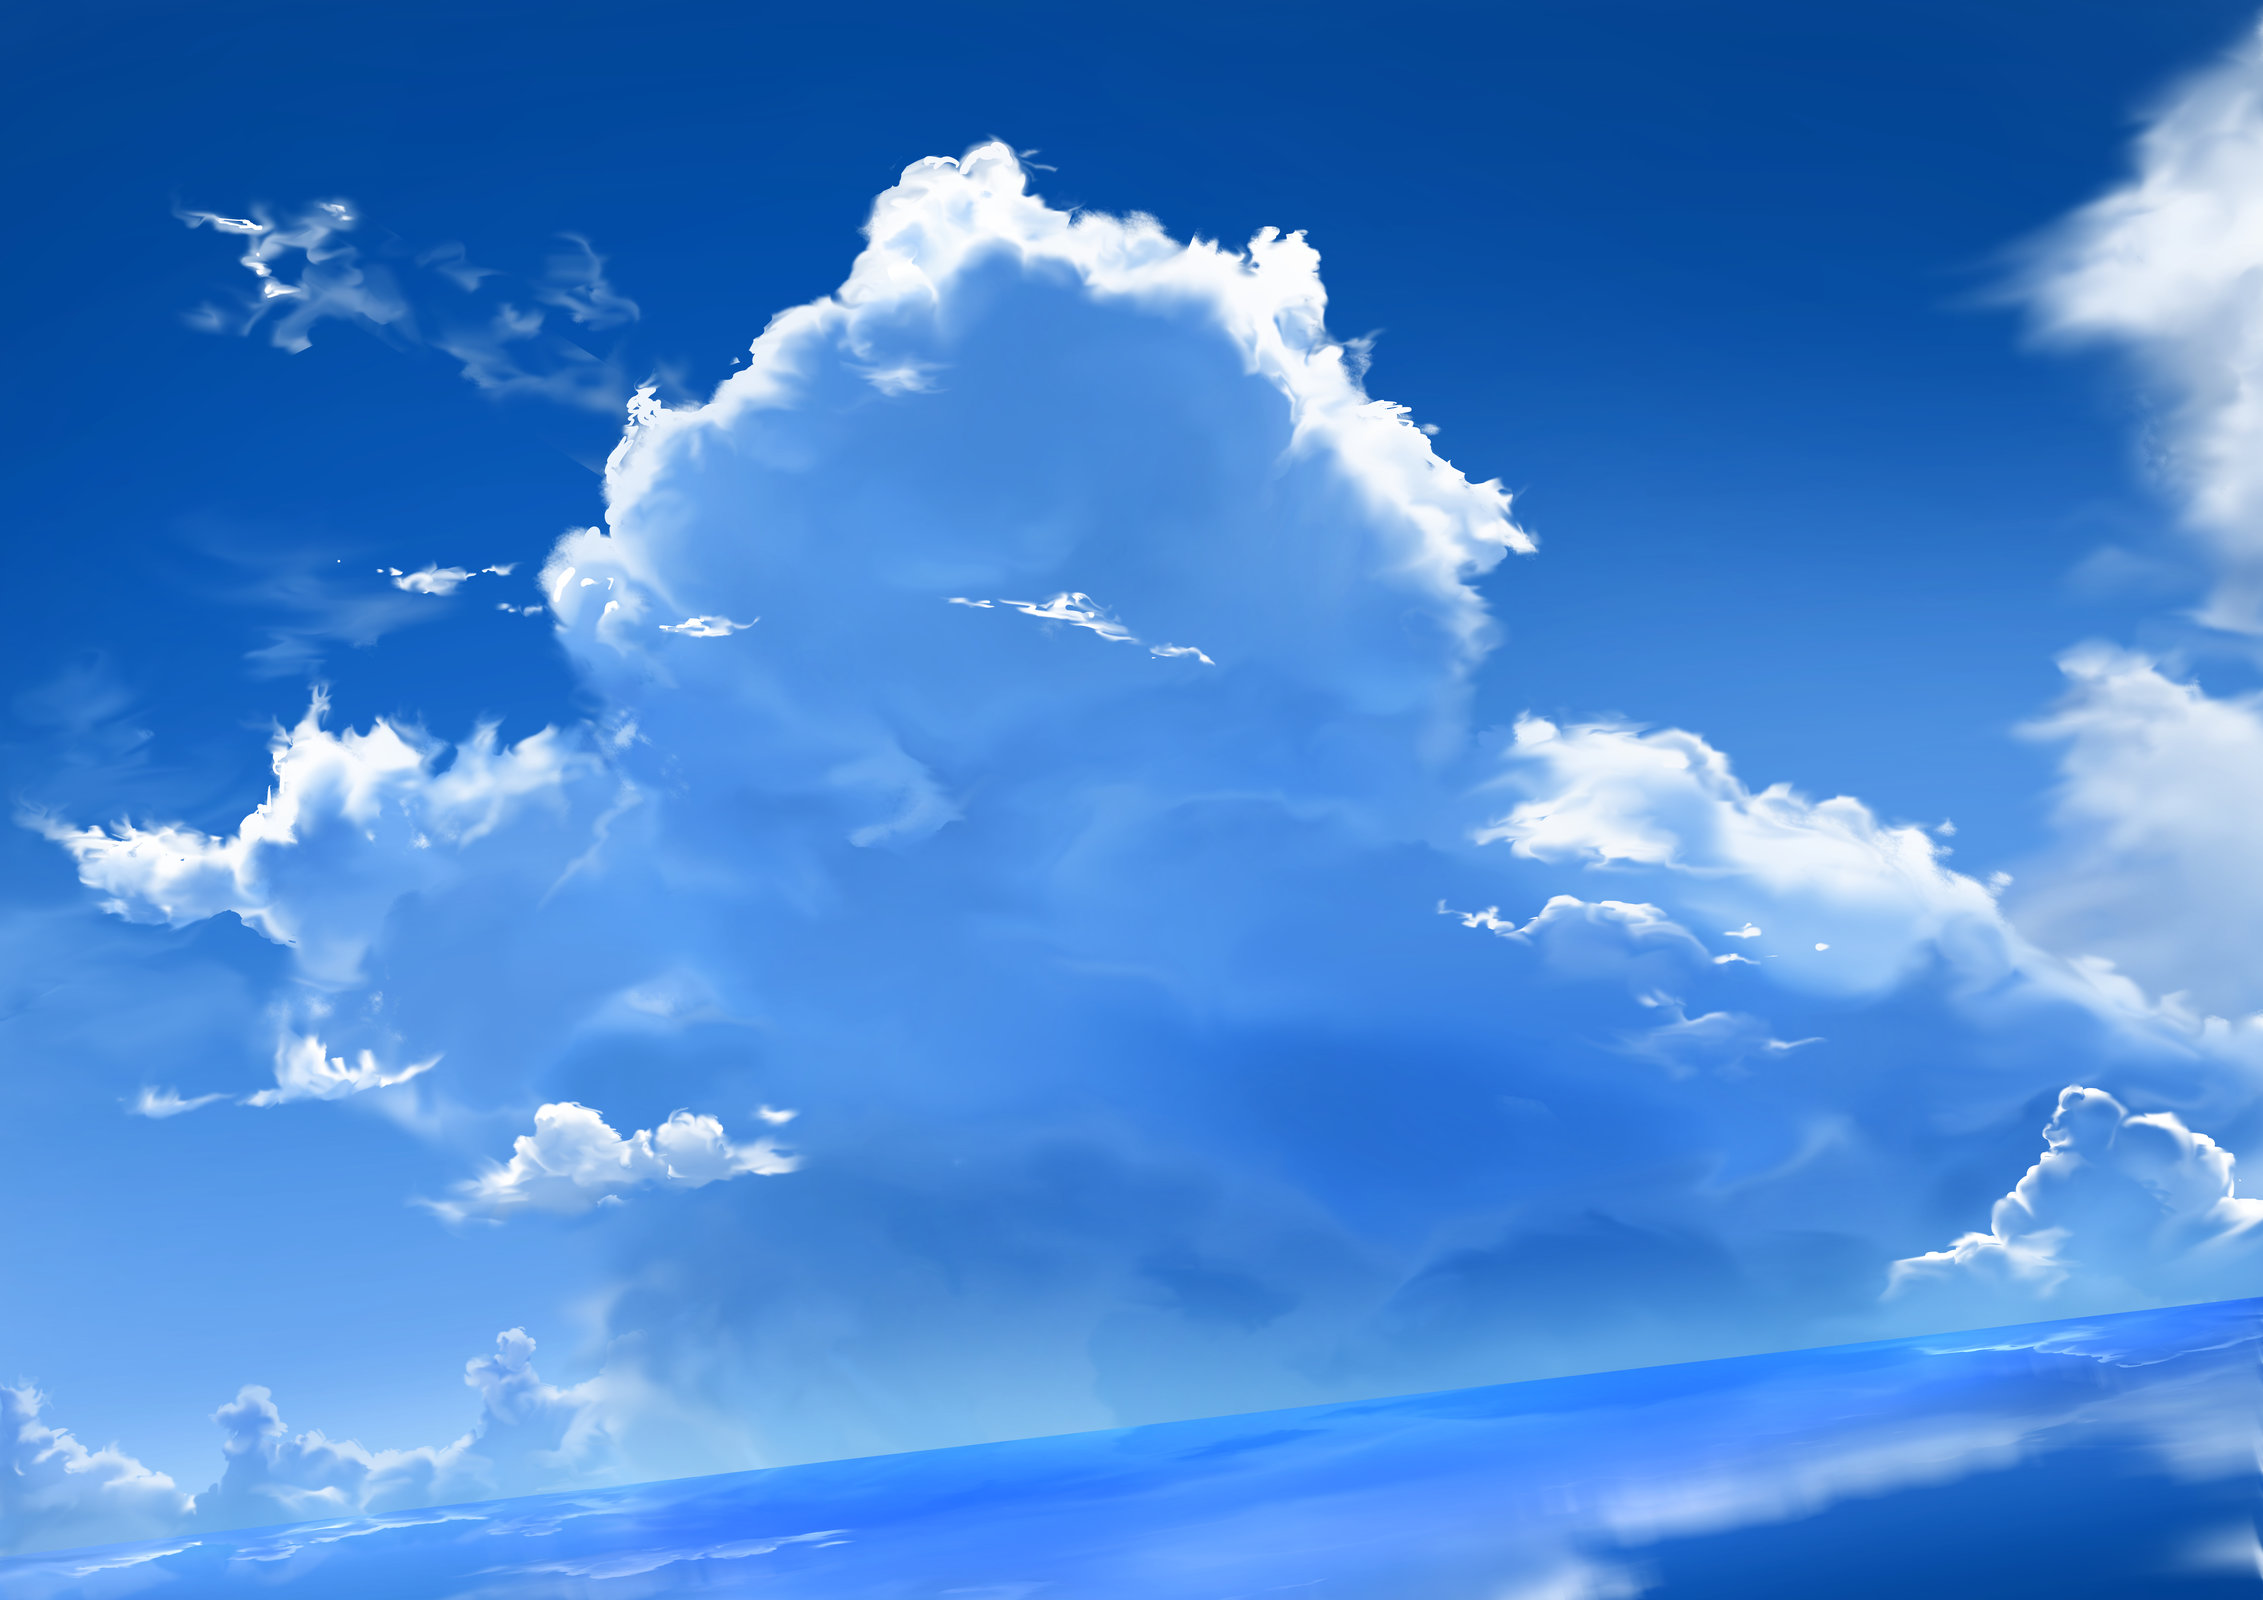 画师「ミツカサ」作品欣赏:变幻莫测,纯净蔚蓝的唯美天空风景插画